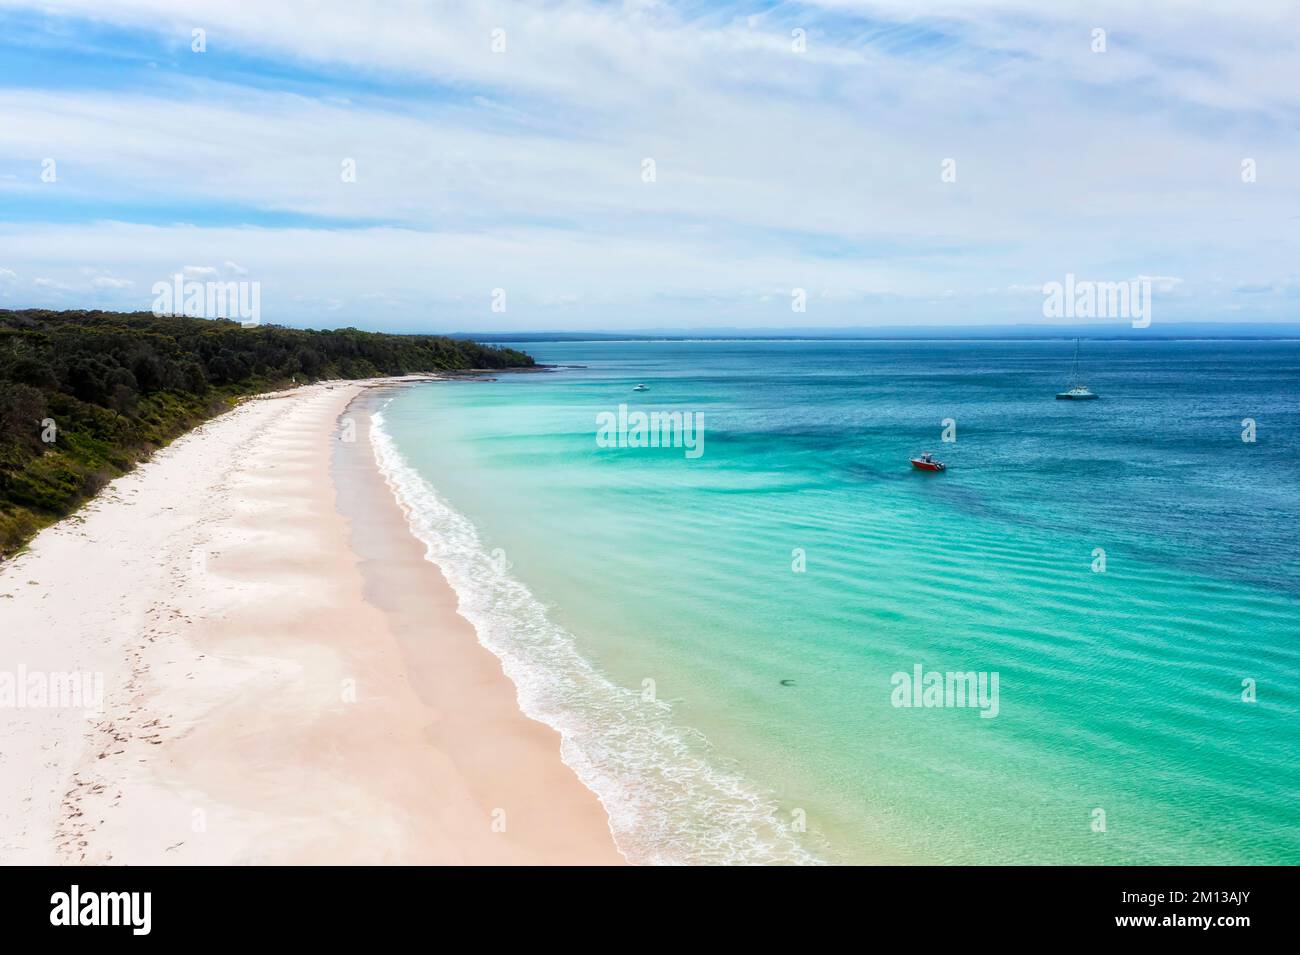 Weißer Sand mit langem Strand in der Jervis Bay an der australischen Pazifikküste - unvergleichliche Meereslandschaft mit malerischem Reiseziel. Stockfoto